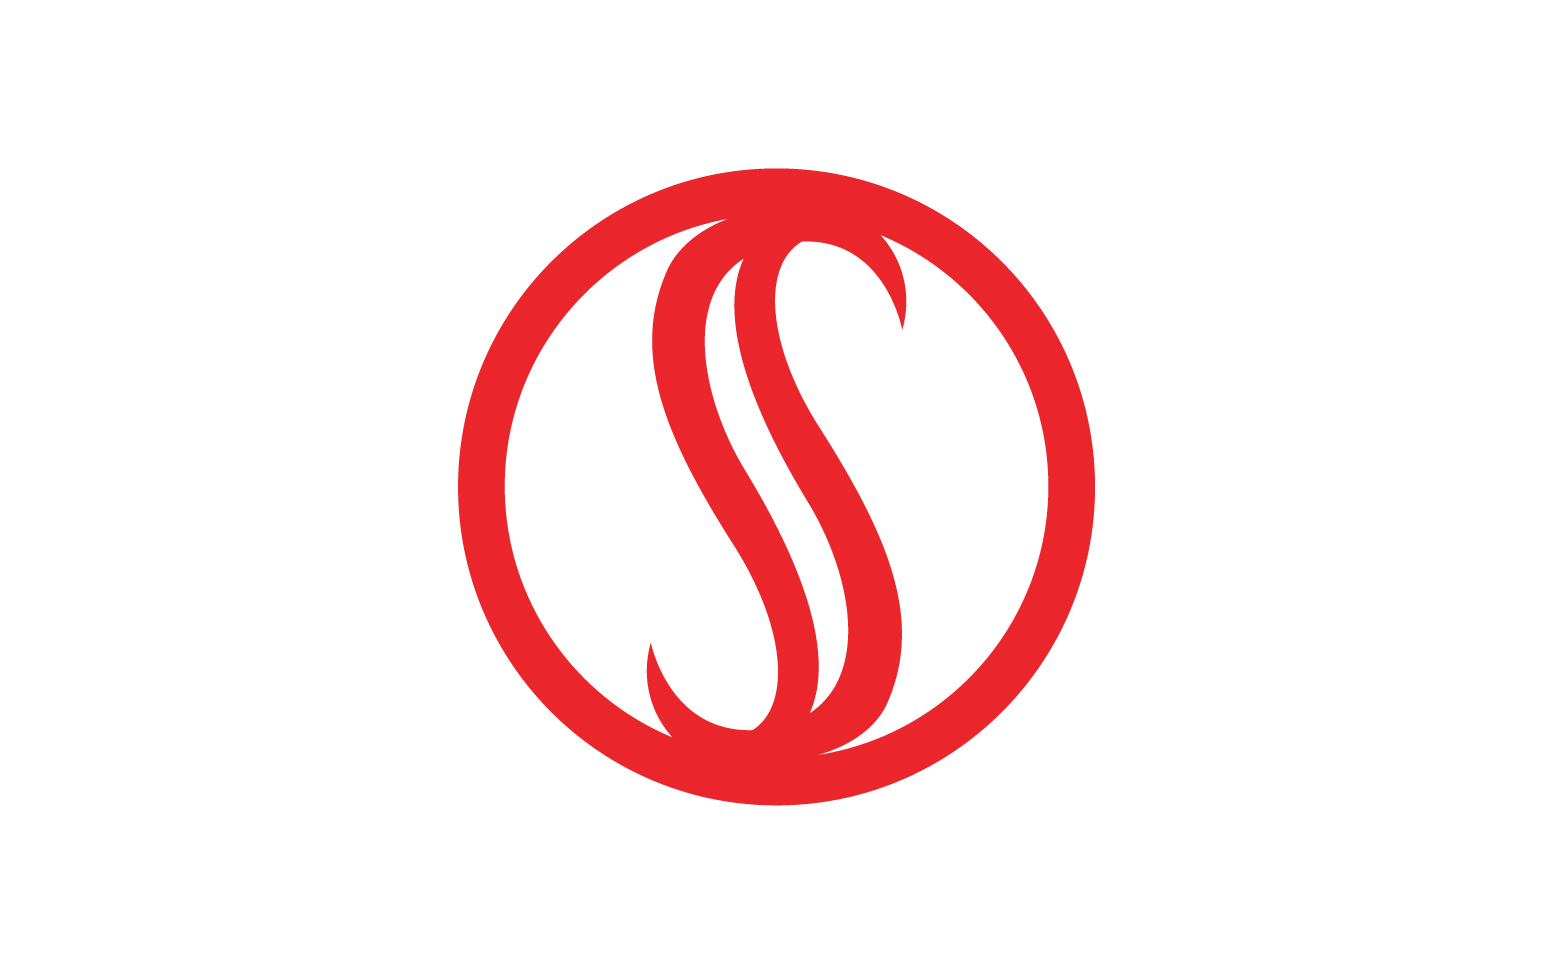 Business letter s initial logo v5